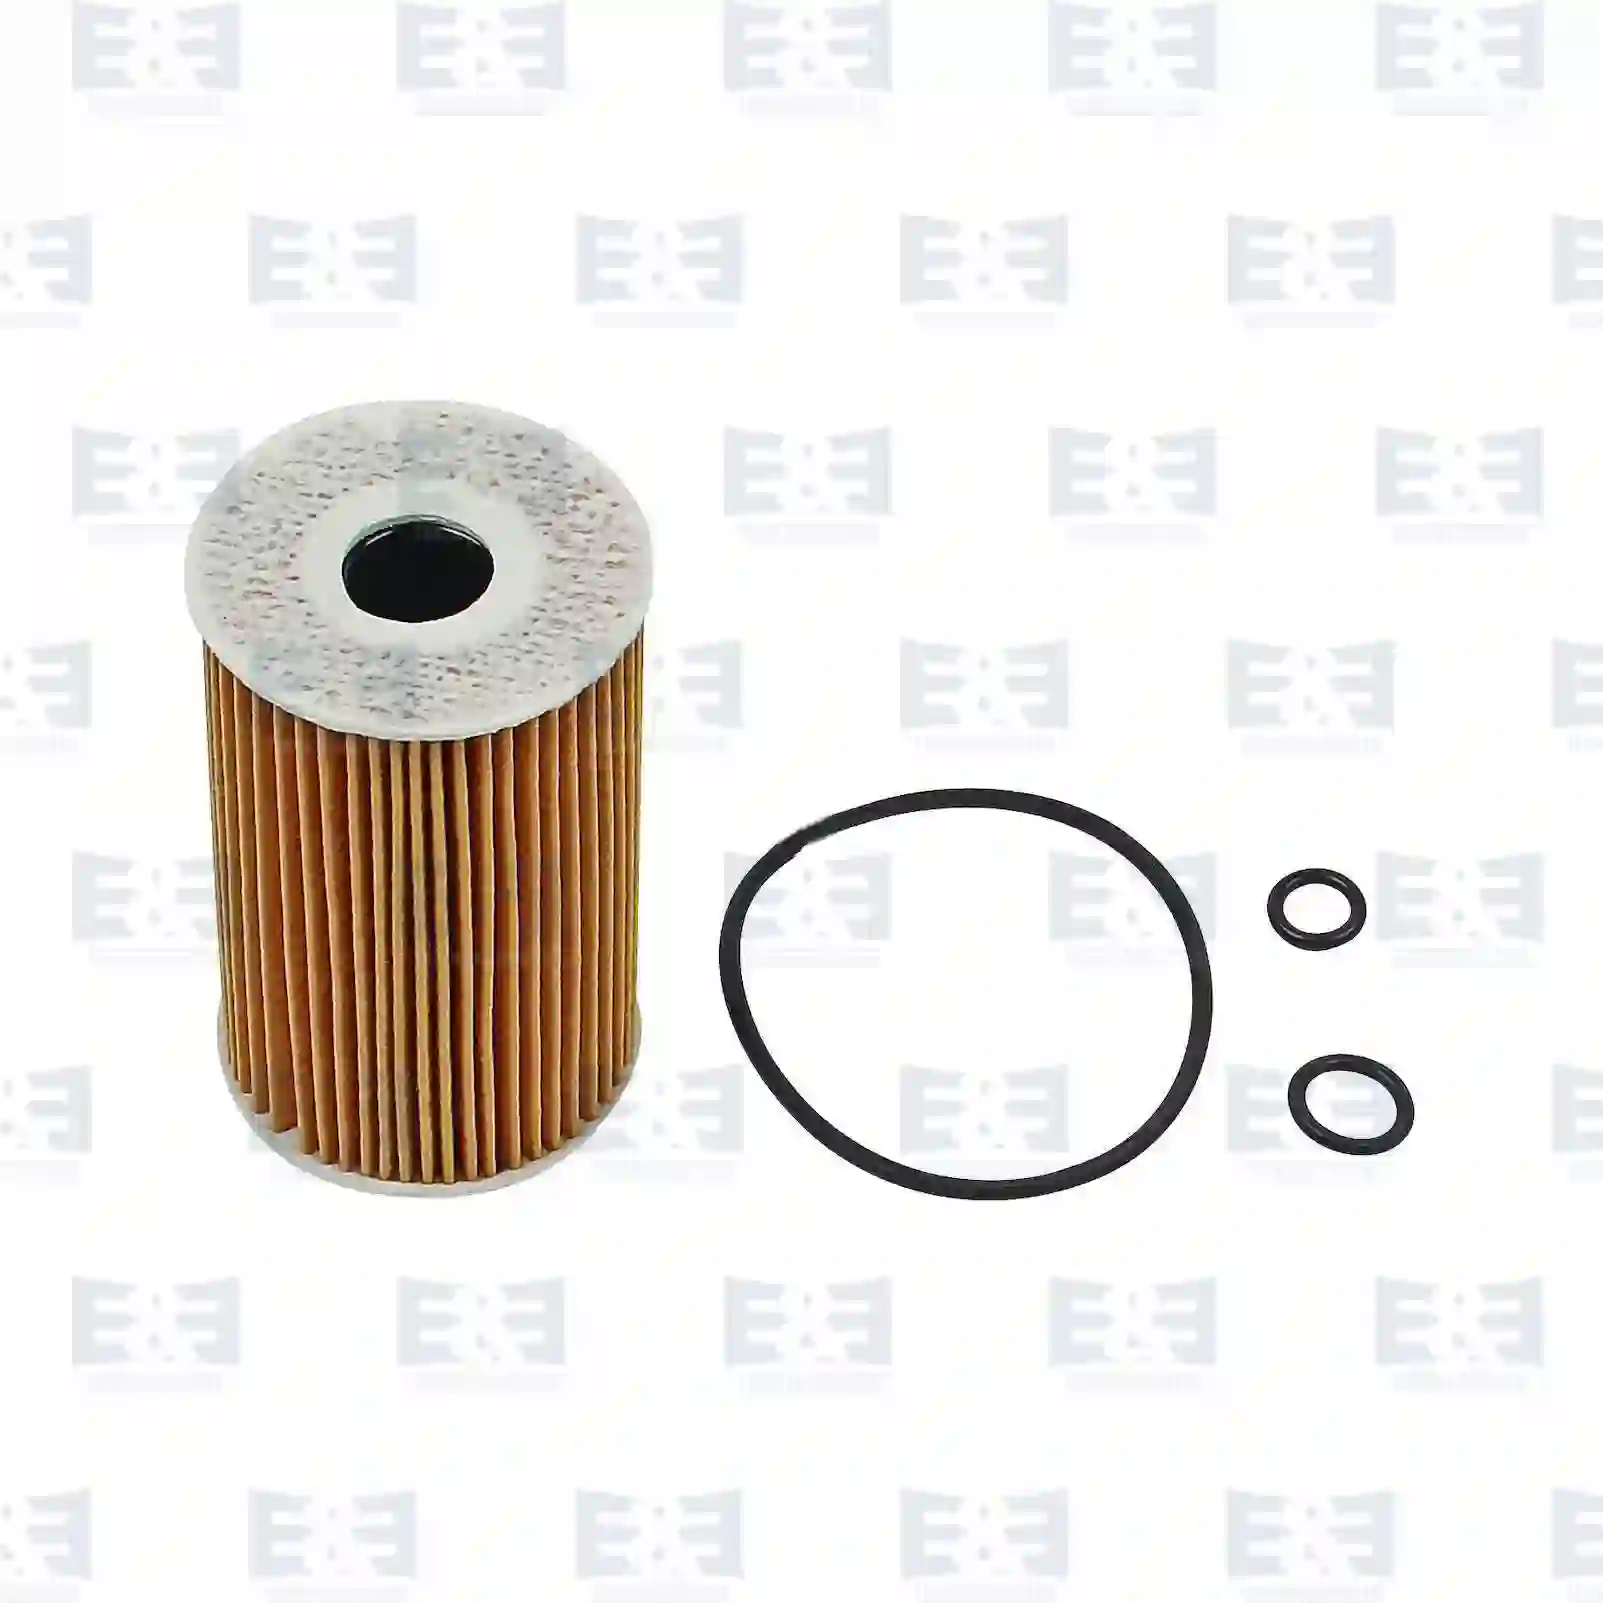 Oil filter insert, 2E2207953, 03L115466, 03L115562, 03L115466, 03L115562, 03L115466, 03L115562, 03L115466, 03L115562, ZG01731-0008 ||  2E2207953 E&E Truck Spare Parts | Truck Spare Parts, Auotomotive Spare Parts Oil filter insert, 2E2207953, 03L115466, 03L115562, 03L115466, 03L115562, 03L115466, 03L115562, 03L115466, 03L115562, ZG01731-0008 ||  2E2207953 E&E Truck Spare Parts | Truck Spare Parts, Auotomotive Spare Parts